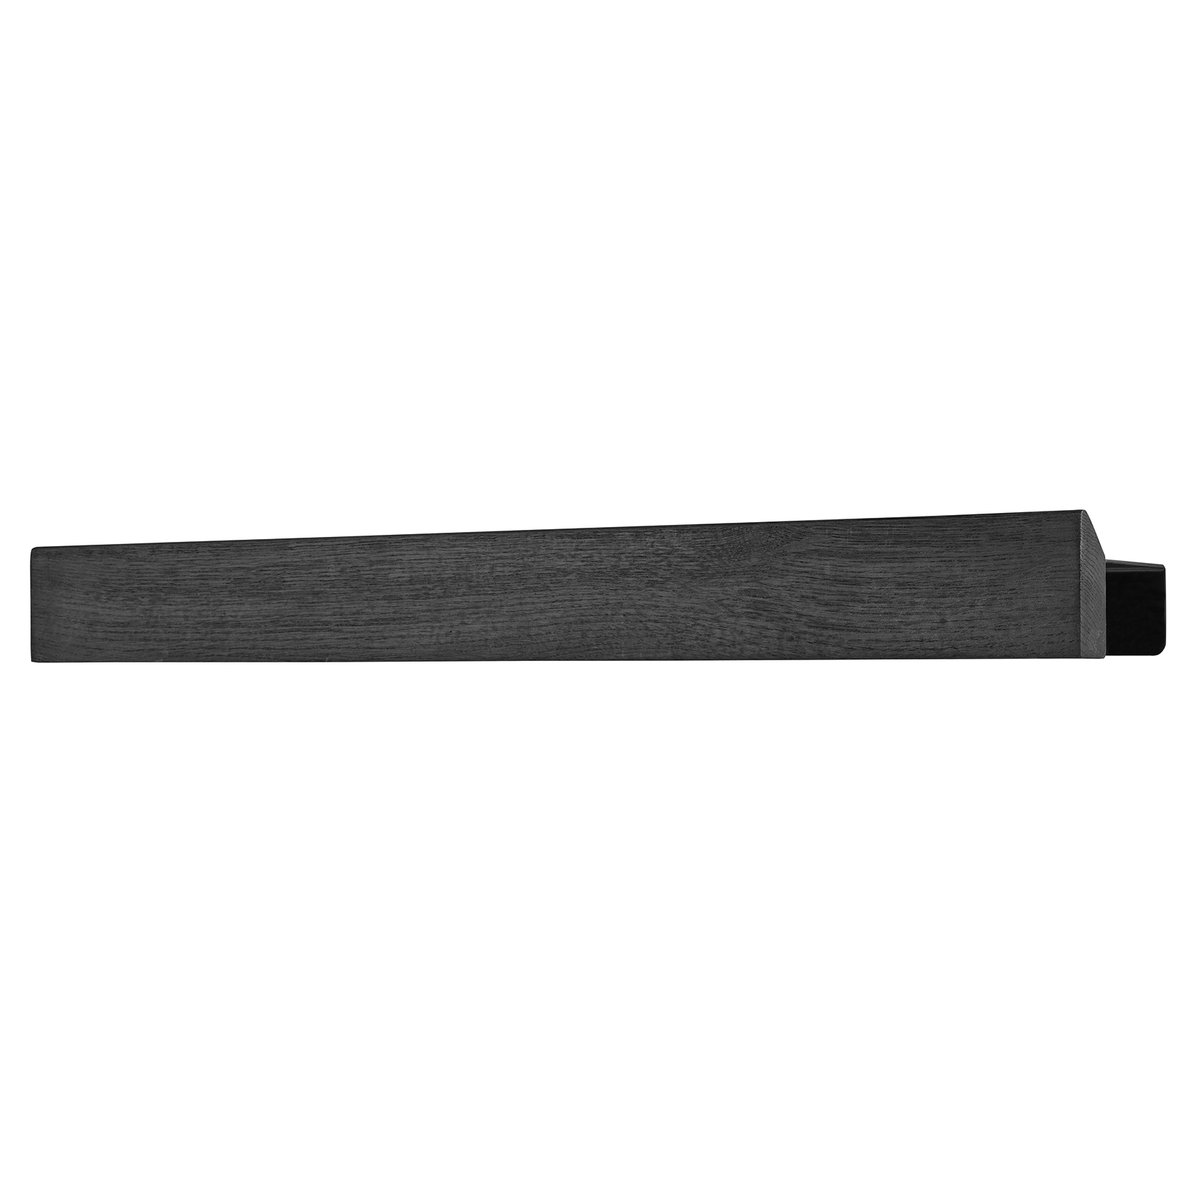 Gejst Flex Rail magneettilista 60 cm Mustaksi petsattu tammi-musta